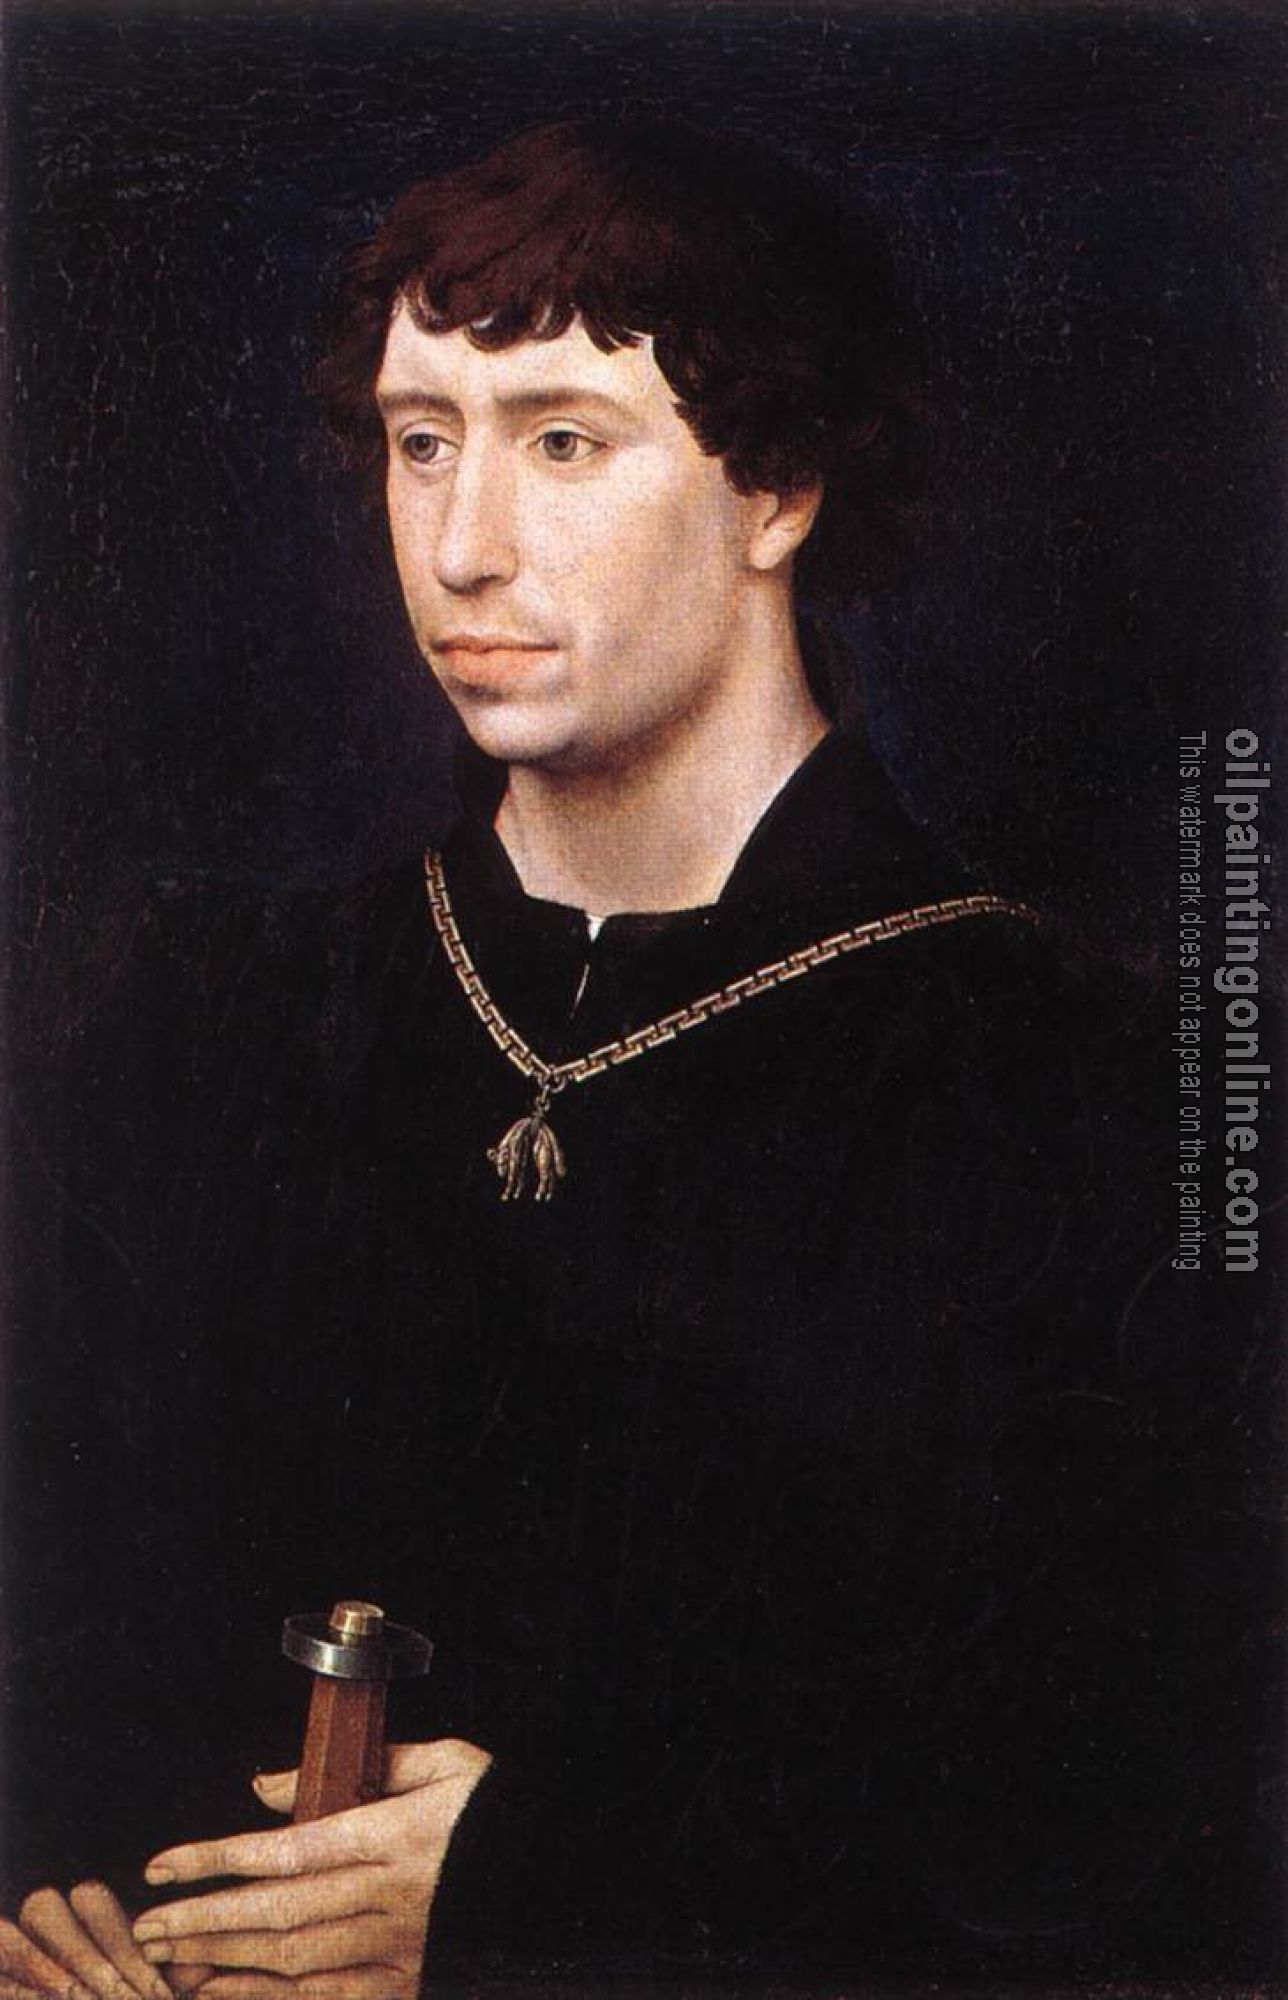 Weyden, Rogier van der - Portrait of Charles the Bold